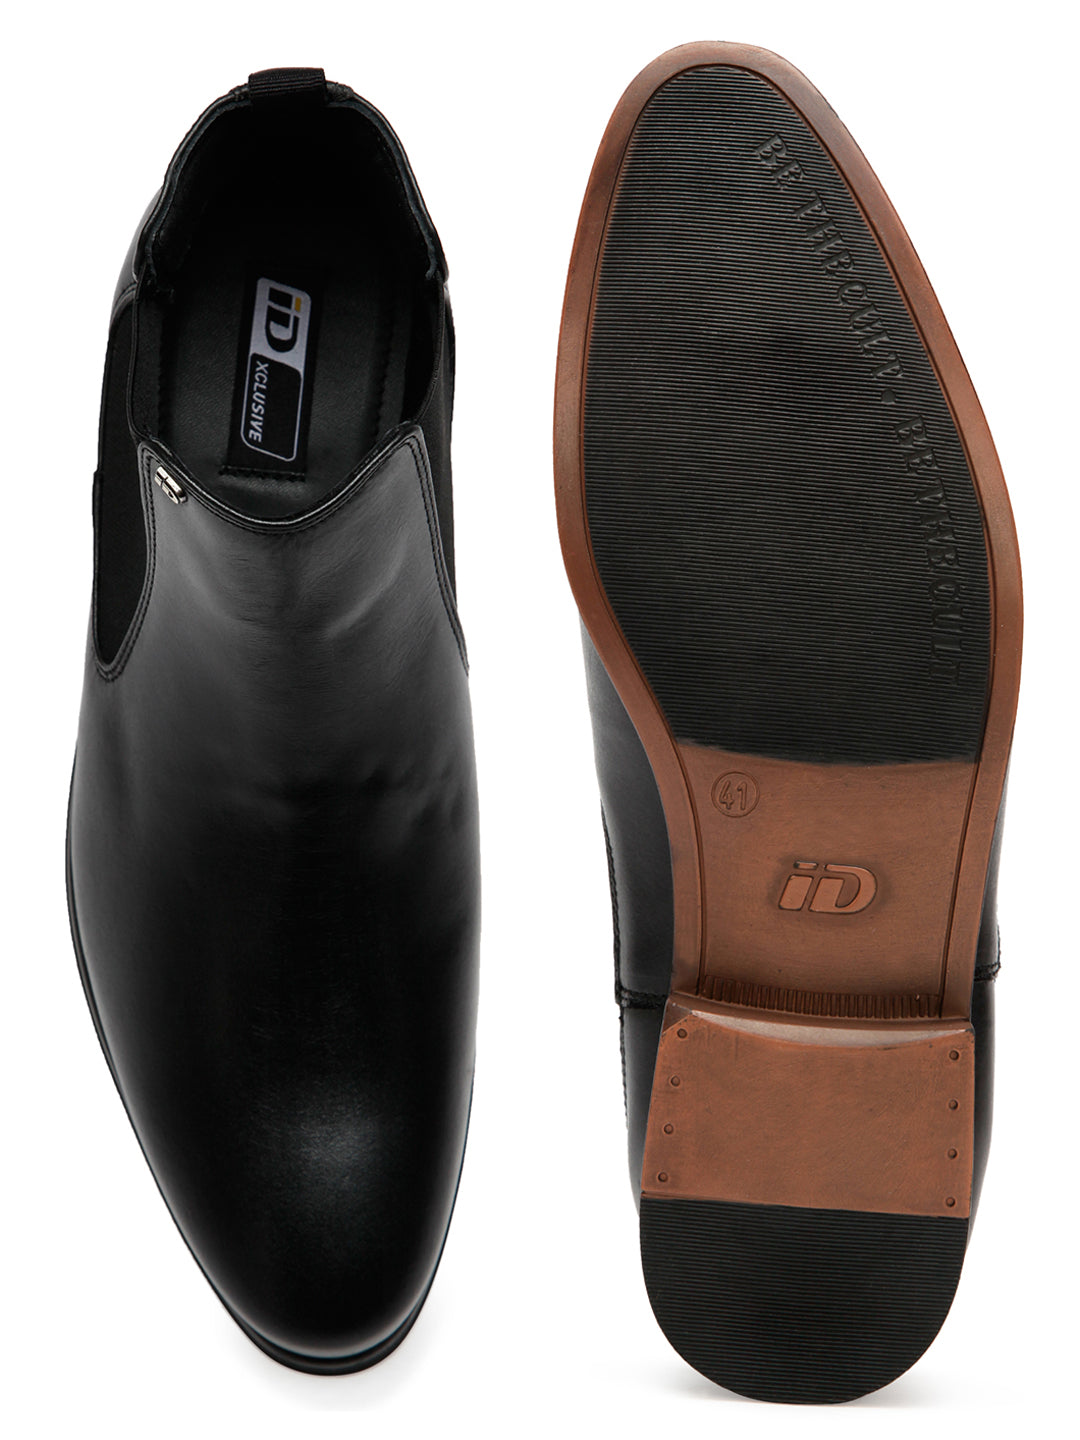 Footwear, Men Footwear, Black Chelsea Boots